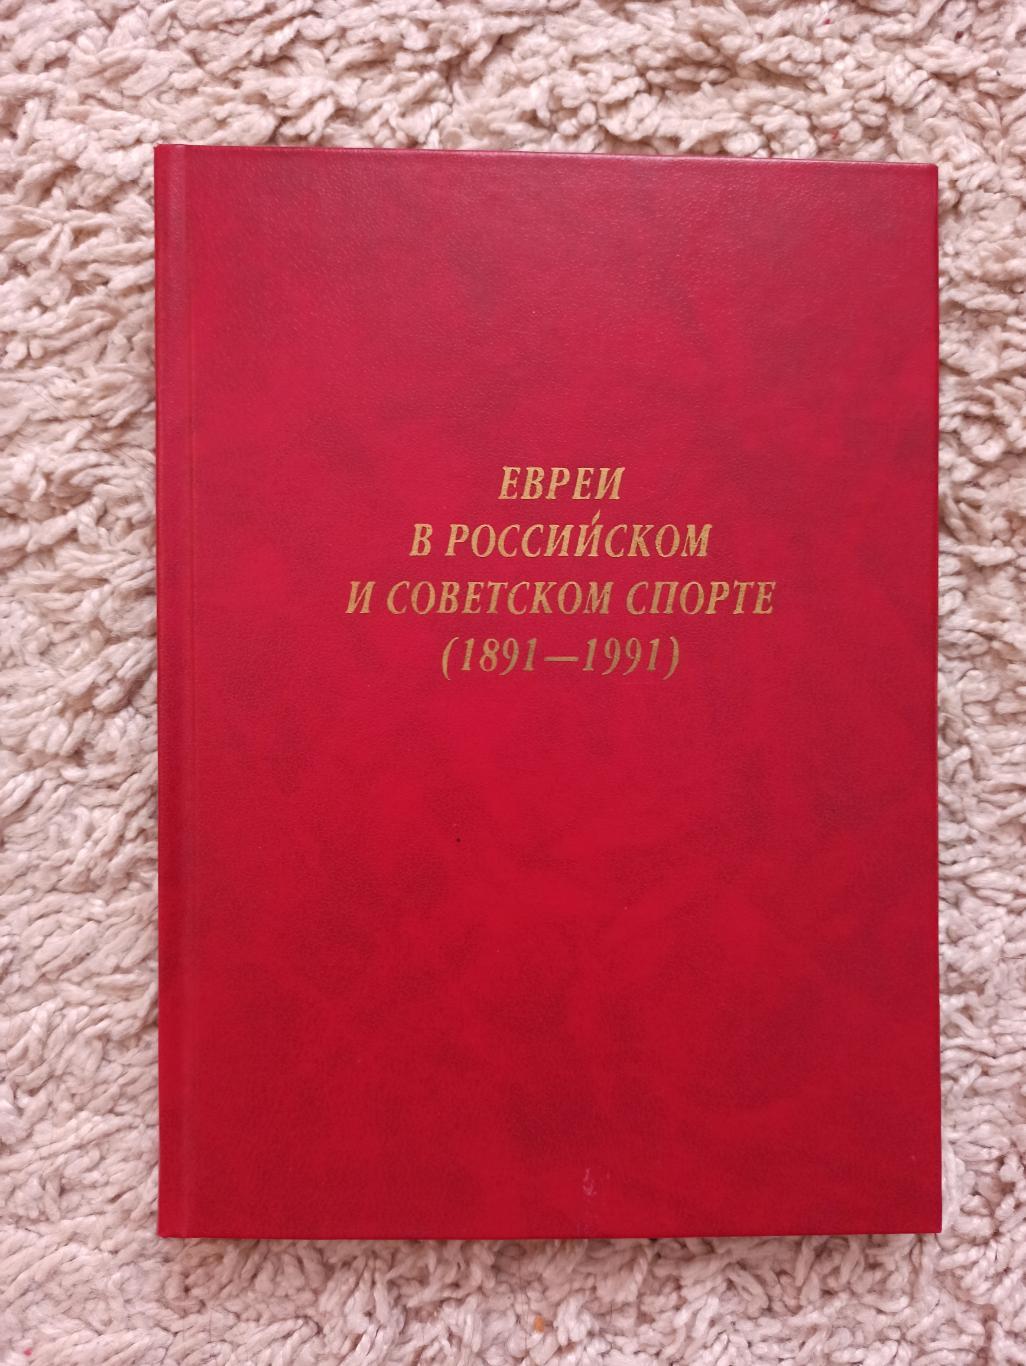 Раритет, Л. Л. Мининберг, Евреи в российском и Советском спорте, 1891-1991